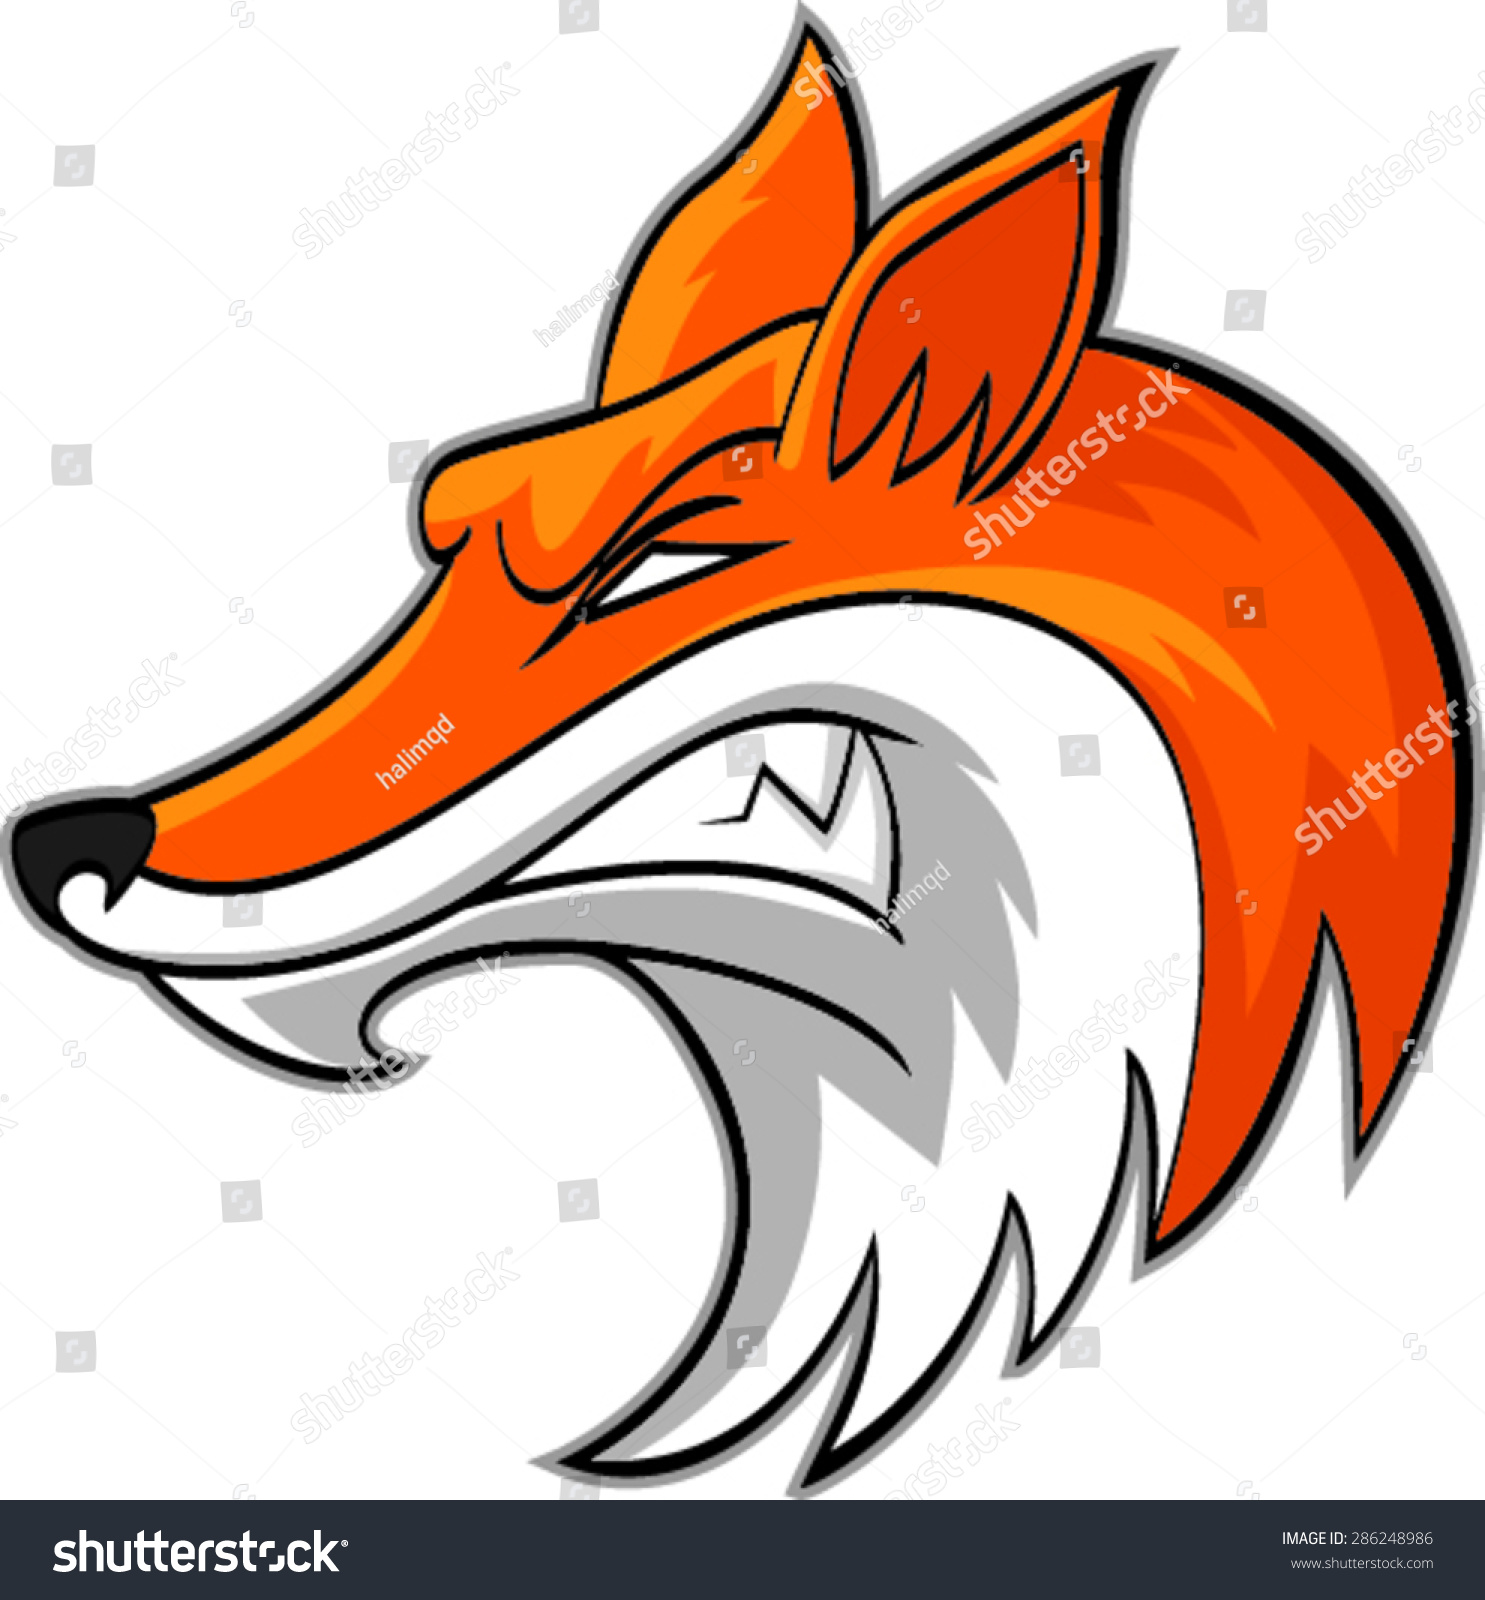 Fox Head Mascot, Vector Illustration - 286248986 : Shutterstock